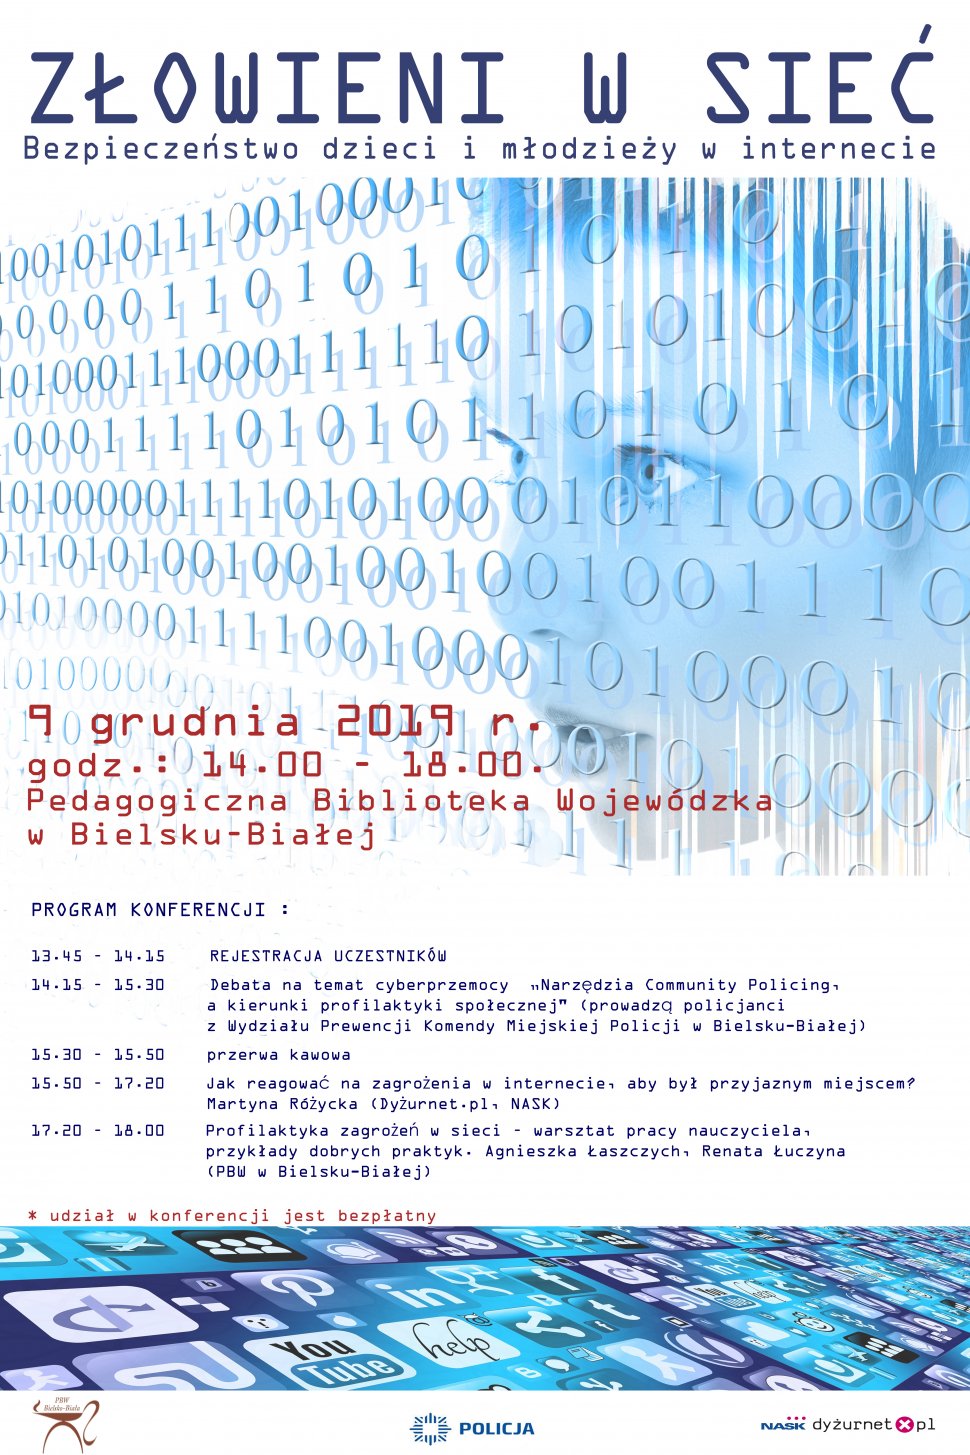 Plakat informacyjny na temat konferencji